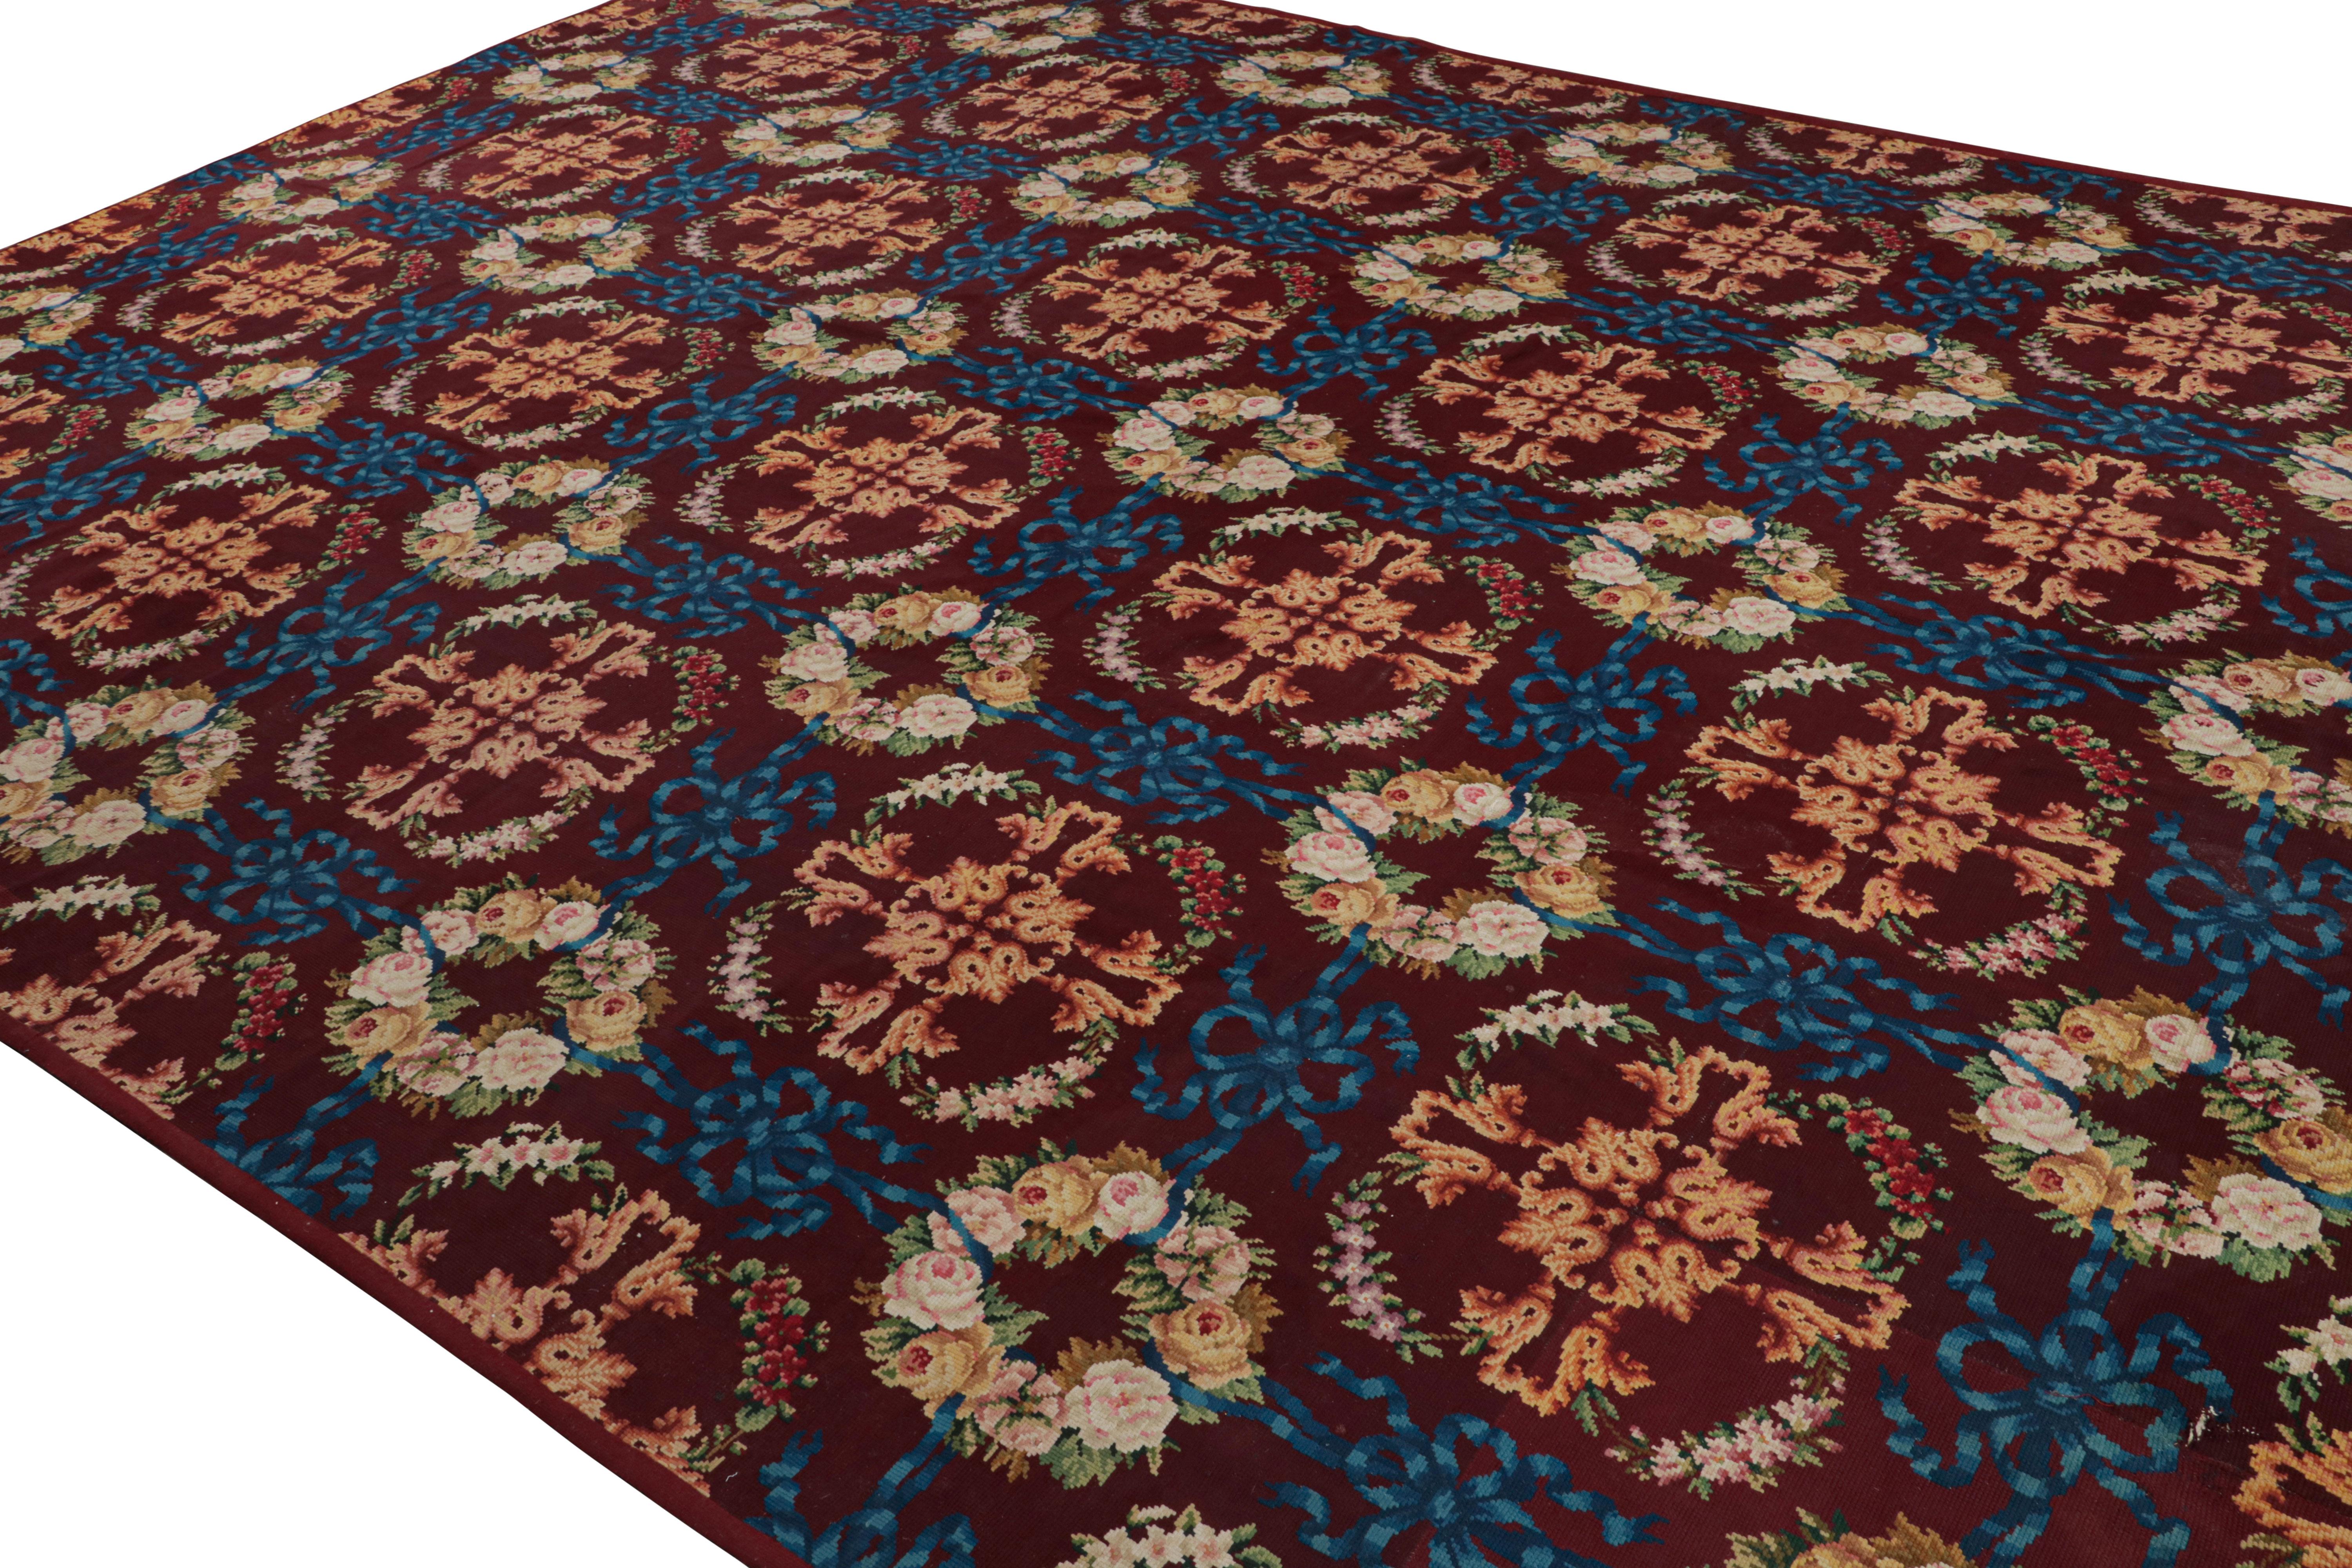 Dieser 12x16 große, antike englische Nadelspitze-Teppich aus Wolle ist handgewebt und stammt aus England (ca. 1920-1930). Er zeigt eine Wiederholung von Blumenmustern. 

Über das Design: 

Das Design dieses antiken englischen Nadelspitze-Teppichs